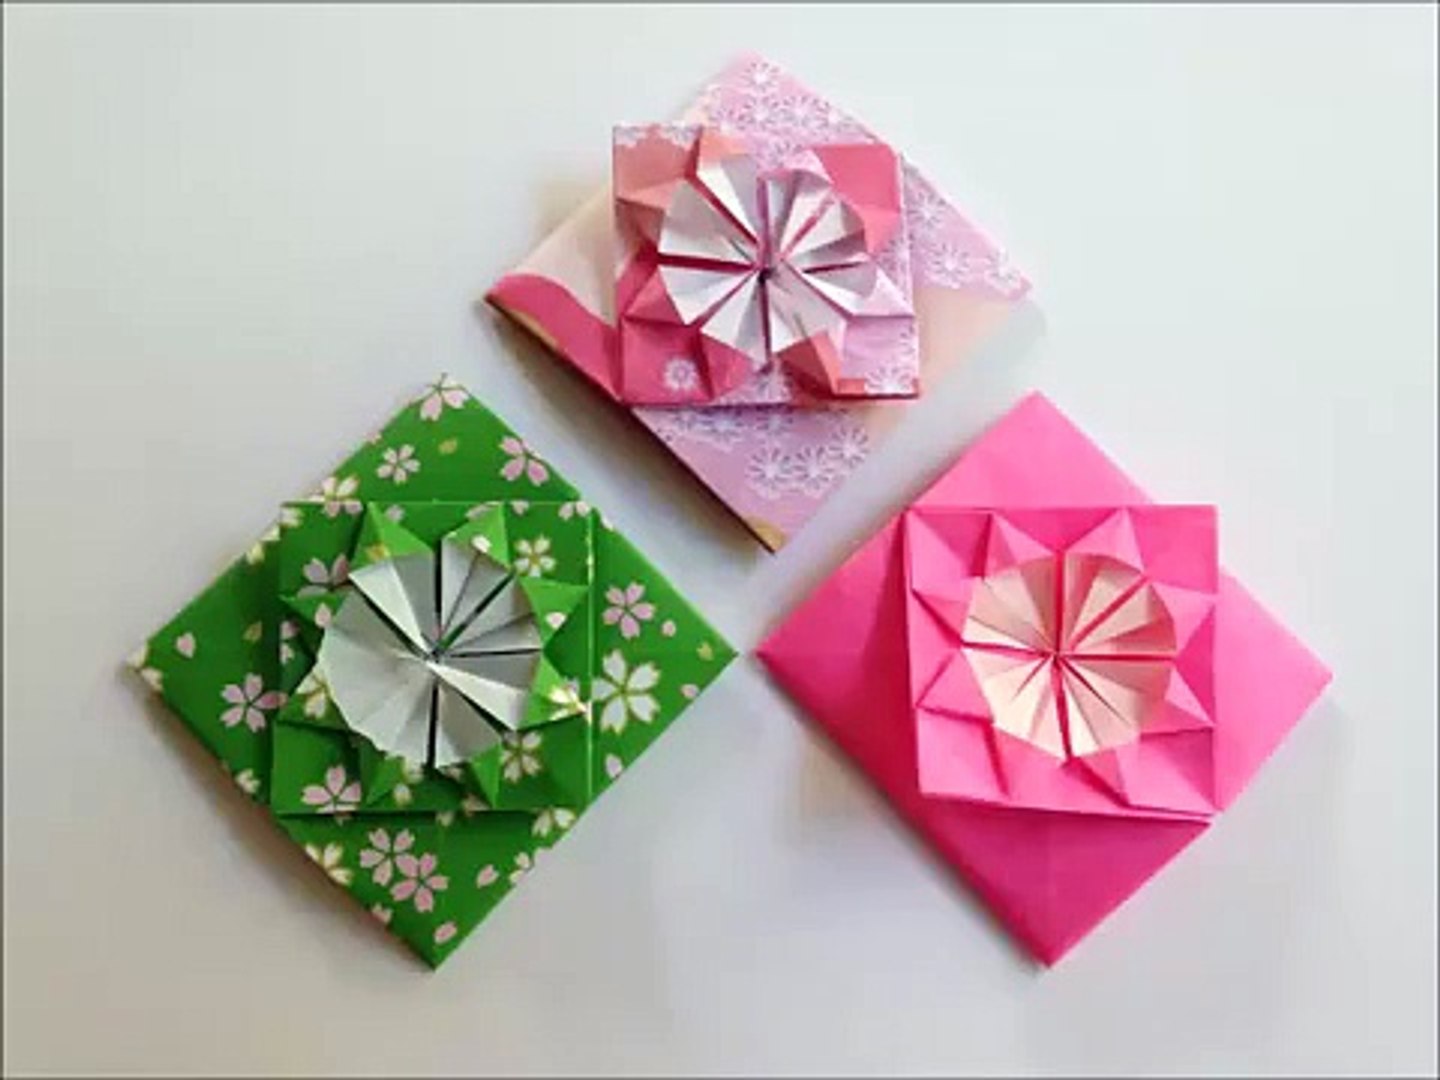 折り紙 1枚 花のポチ袋4 簡単な折り方 Niceno1 Origami Flower Envelope Tutorial 3w6joe Tonw Video Dailymotion